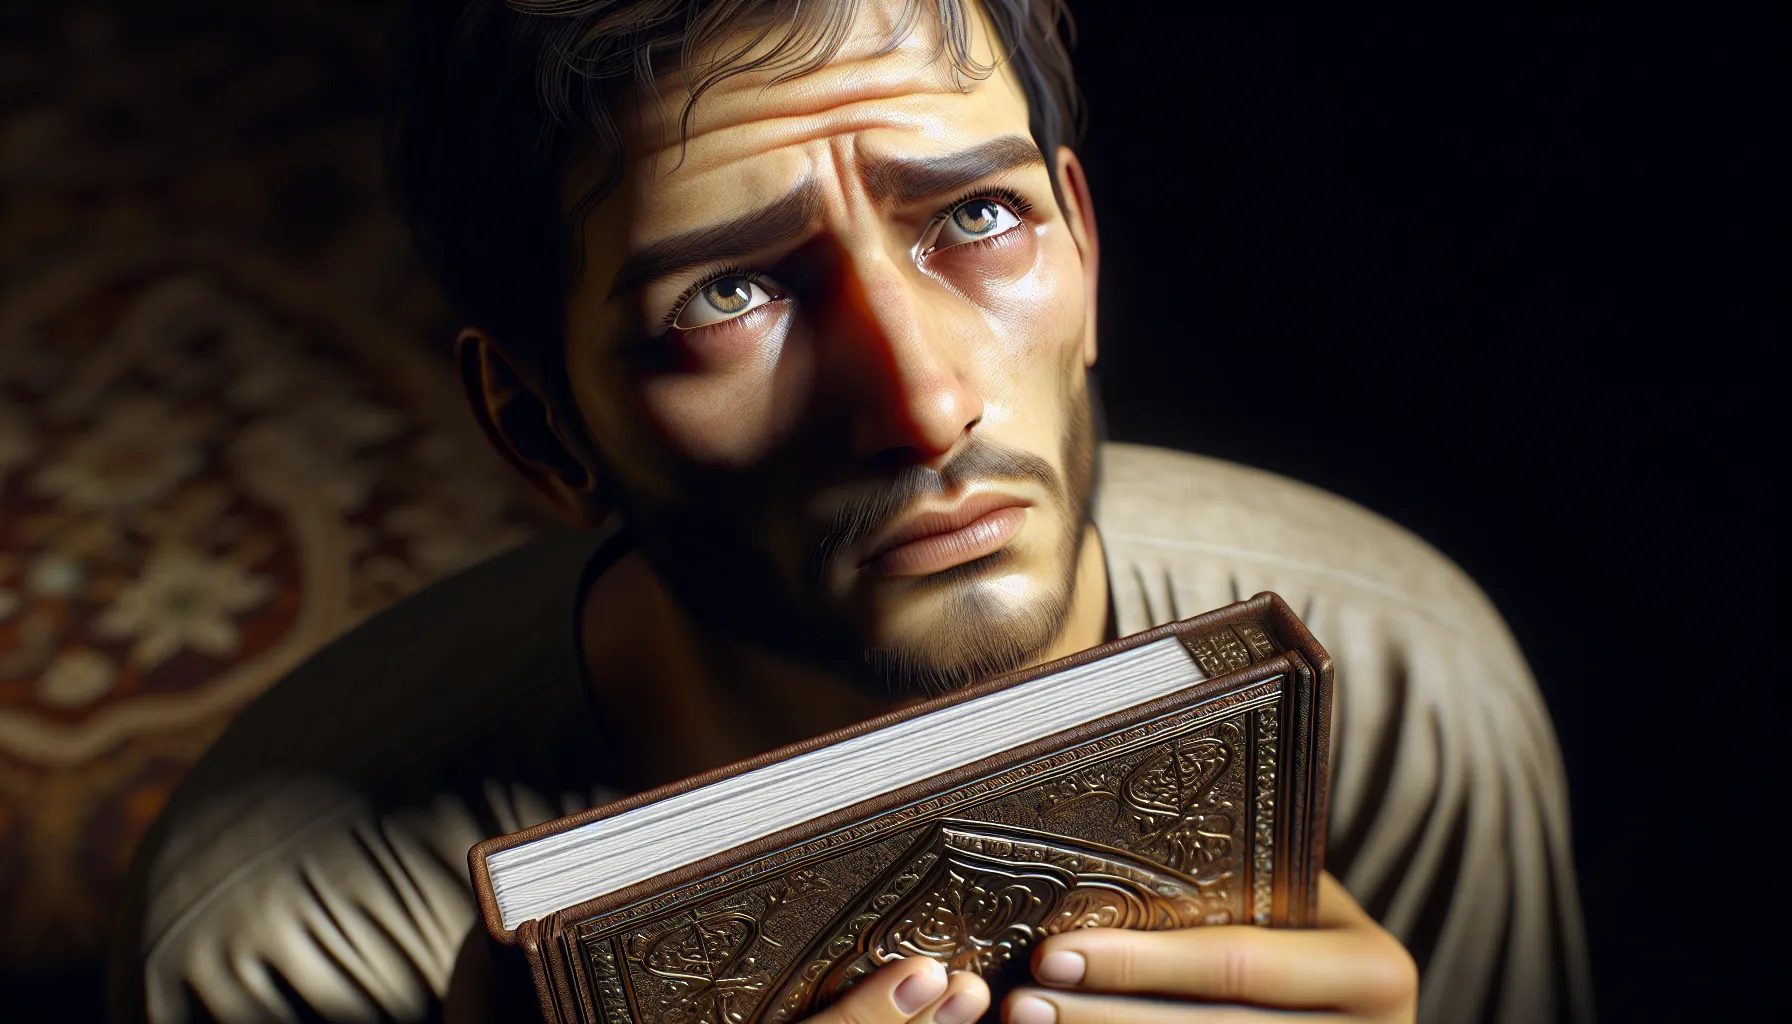 Imagen: Una persona con expresión de preocupación mirando hacia arriba mientras sostiene un libro religioso.